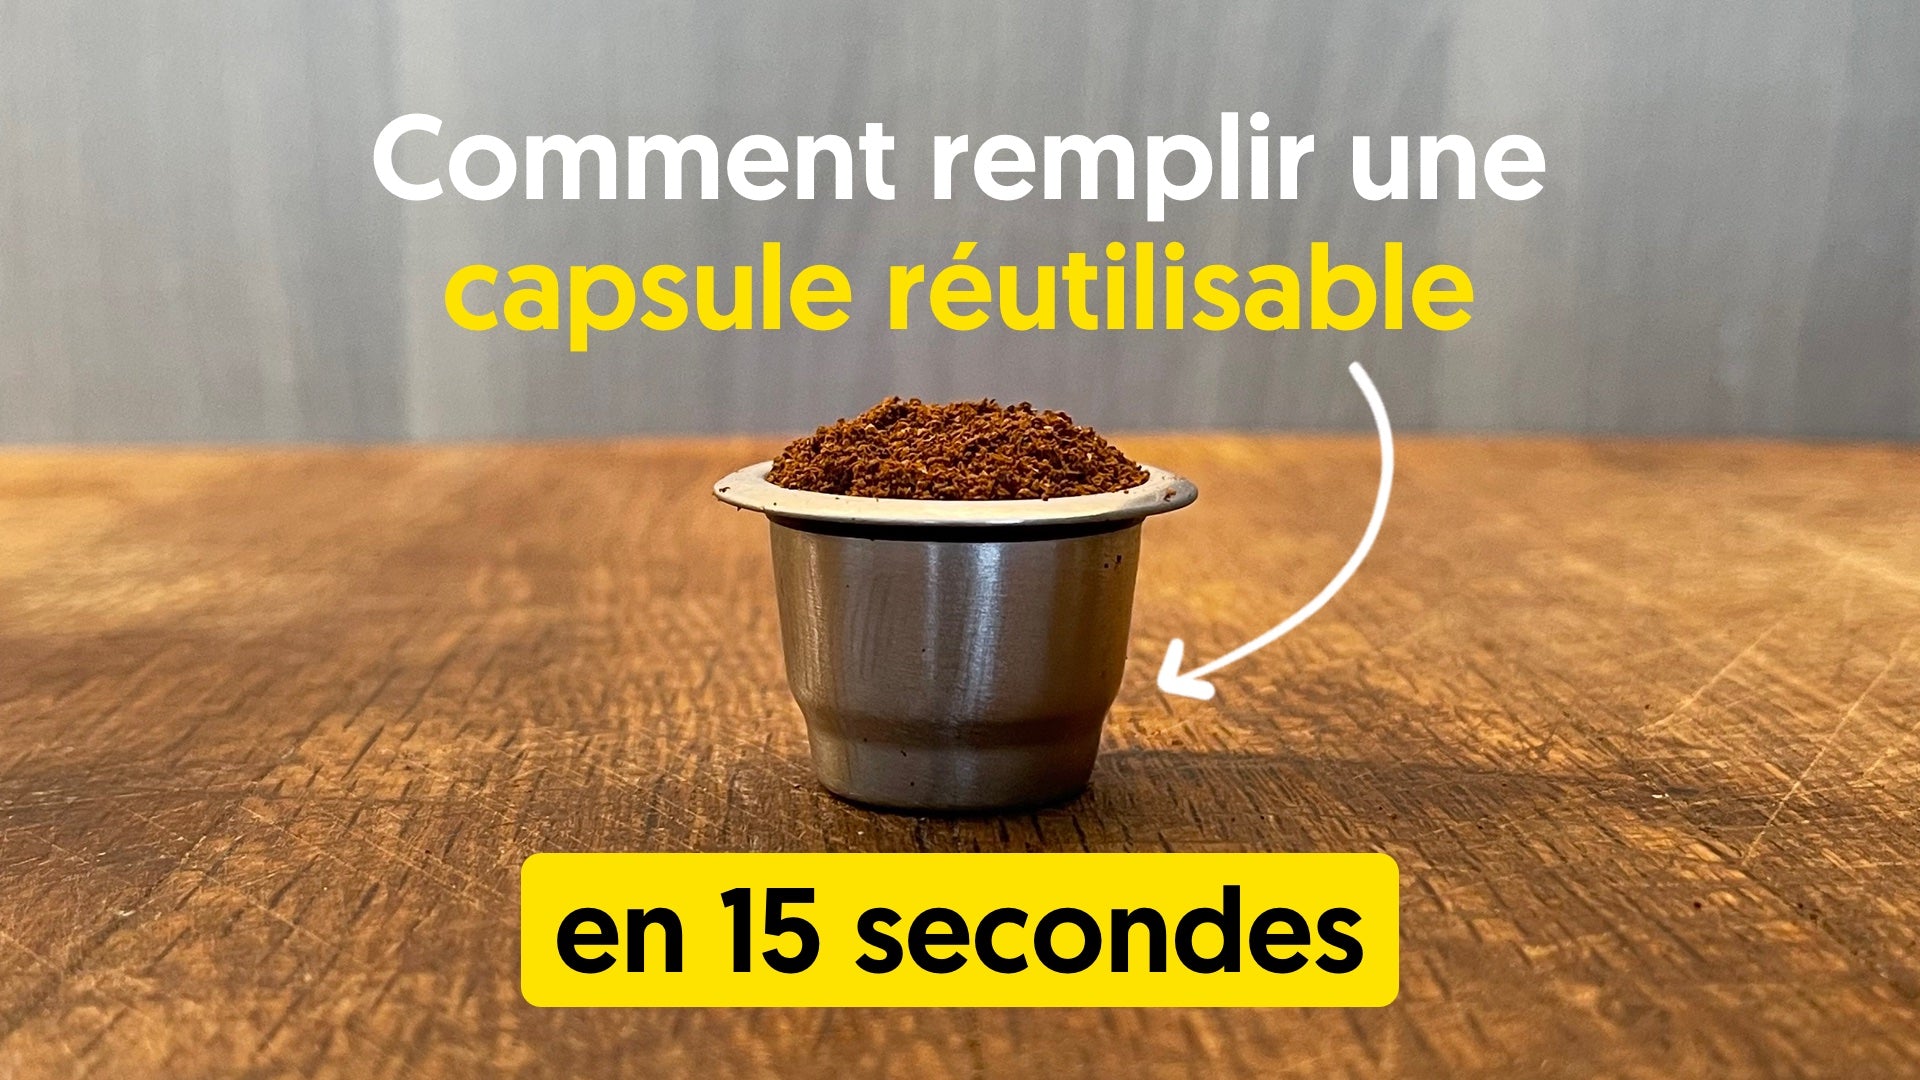 Tuto : comment remplir une capsule rechargeable nespresso en 15 secondes